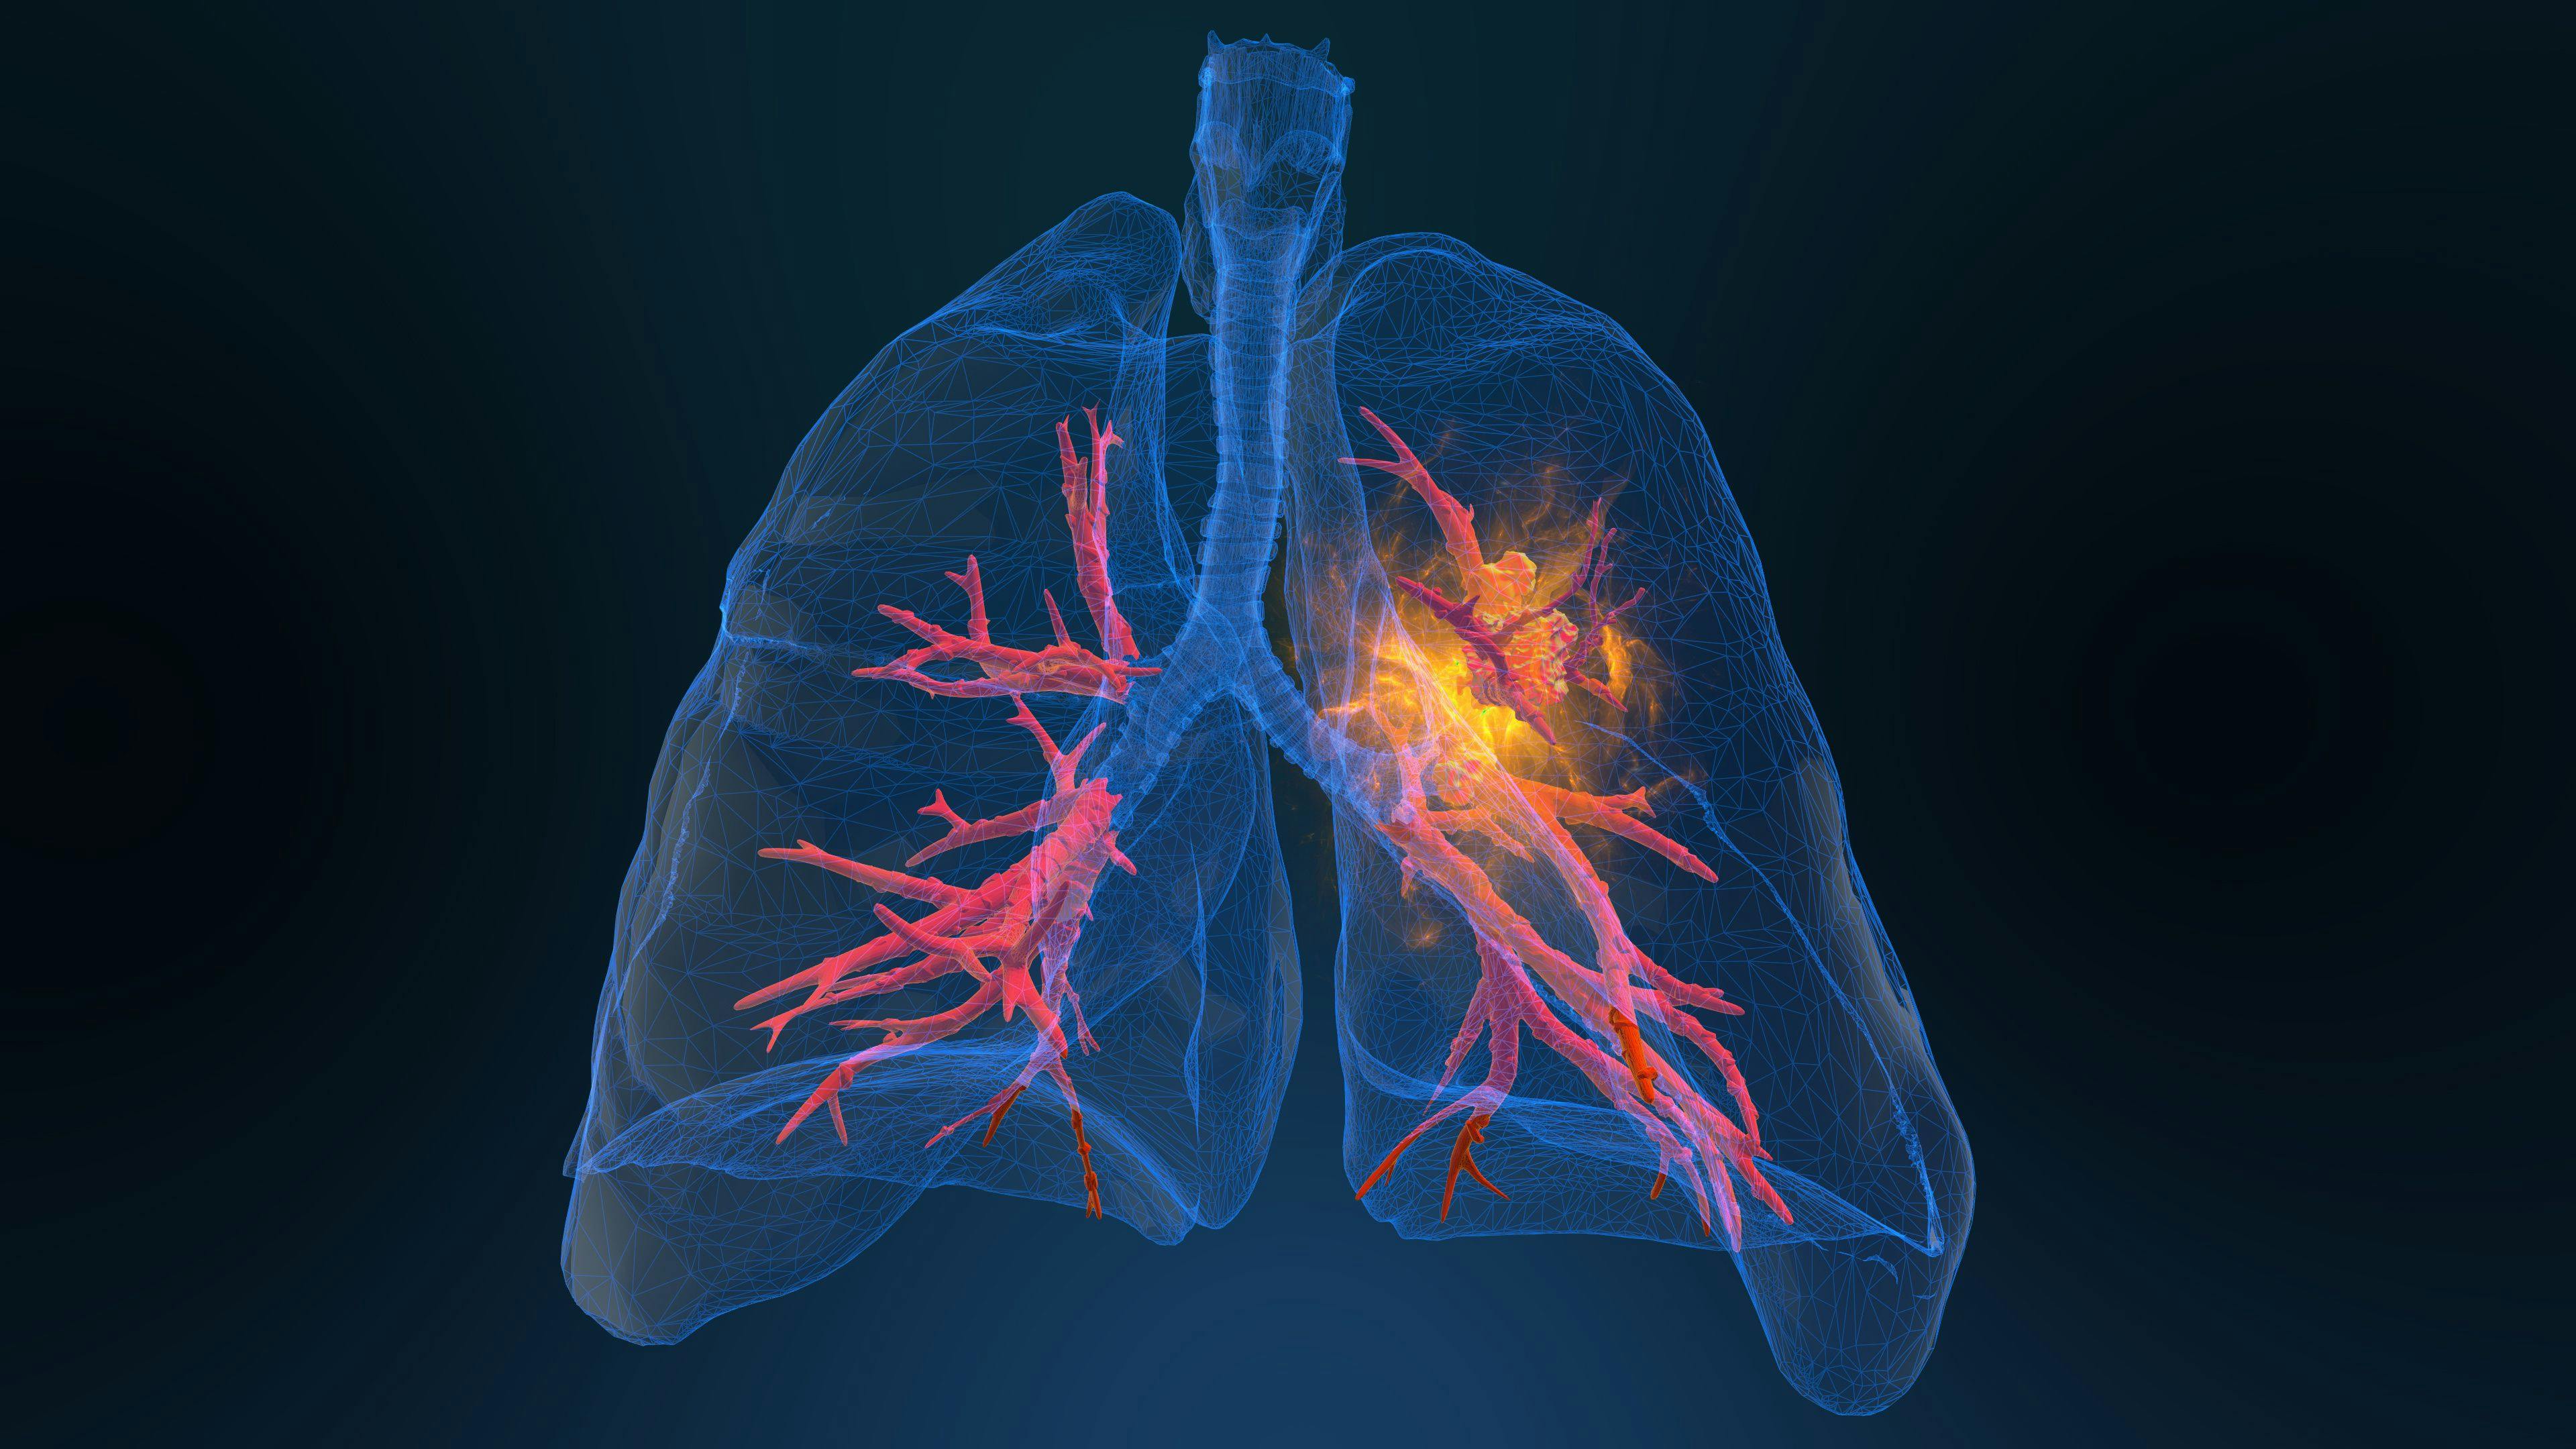 3d rendered illustration of lung cancer 3D illustration | Image Credit: appledesign - stock.adobe.com